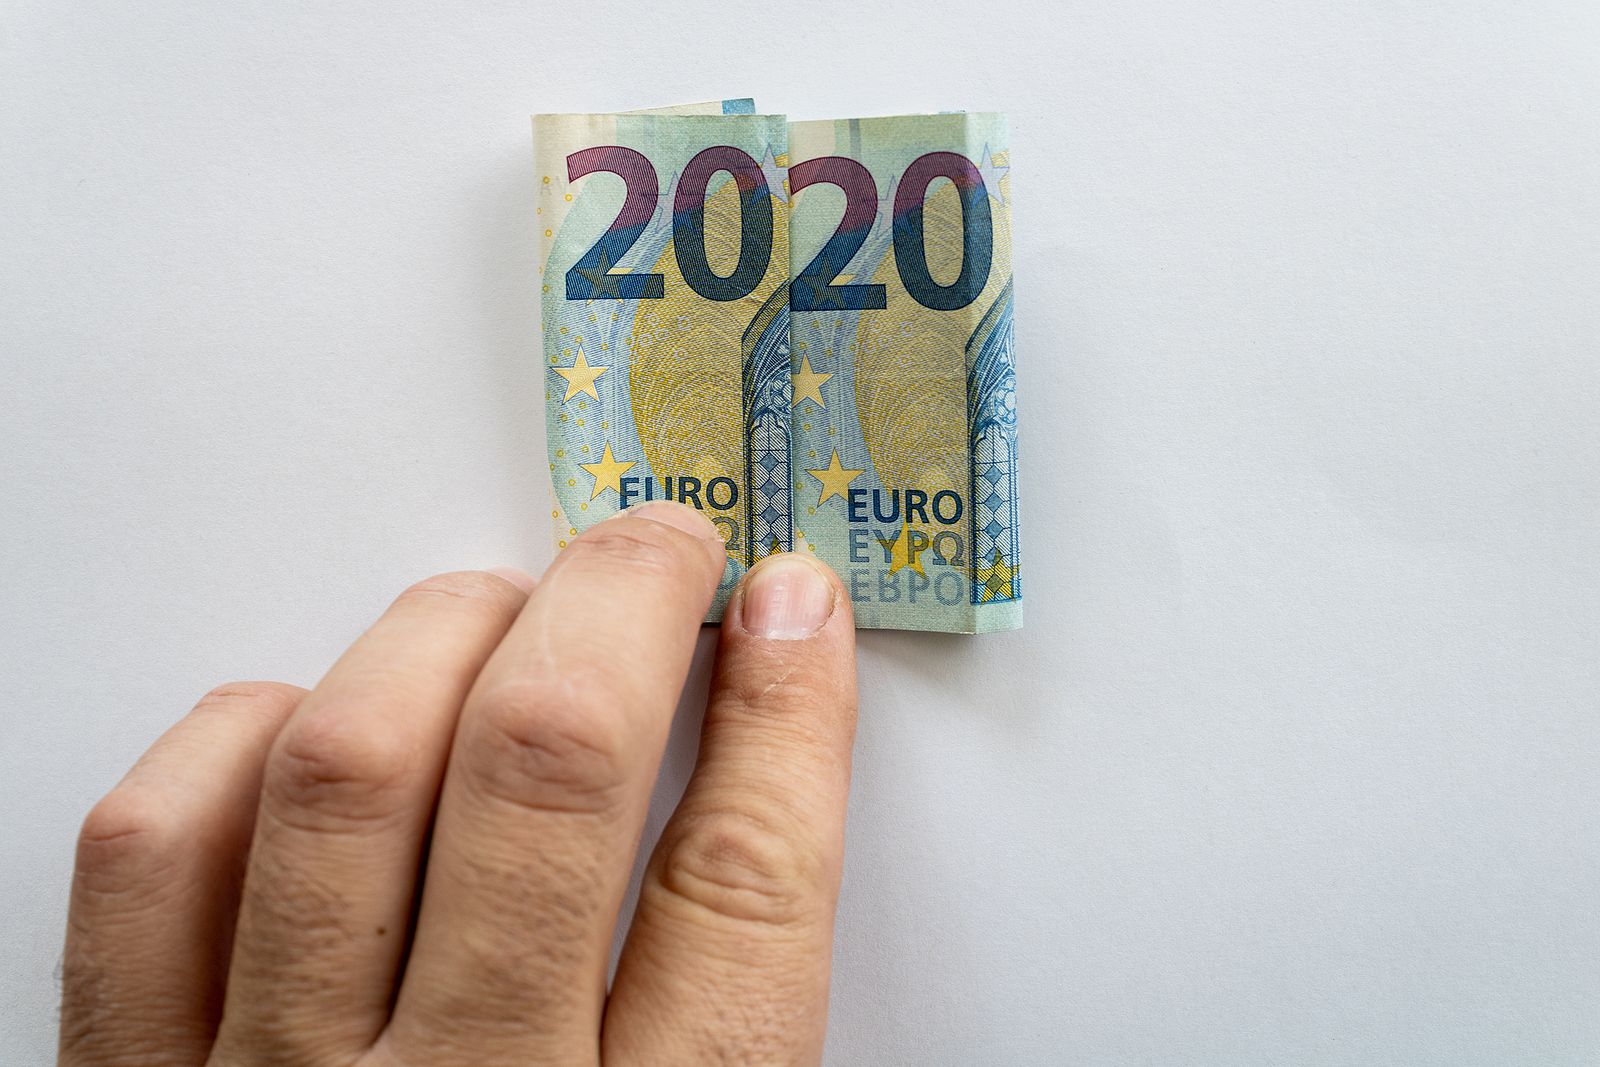 Cómo distinguir los billetes de euro si tienes problemas de visión